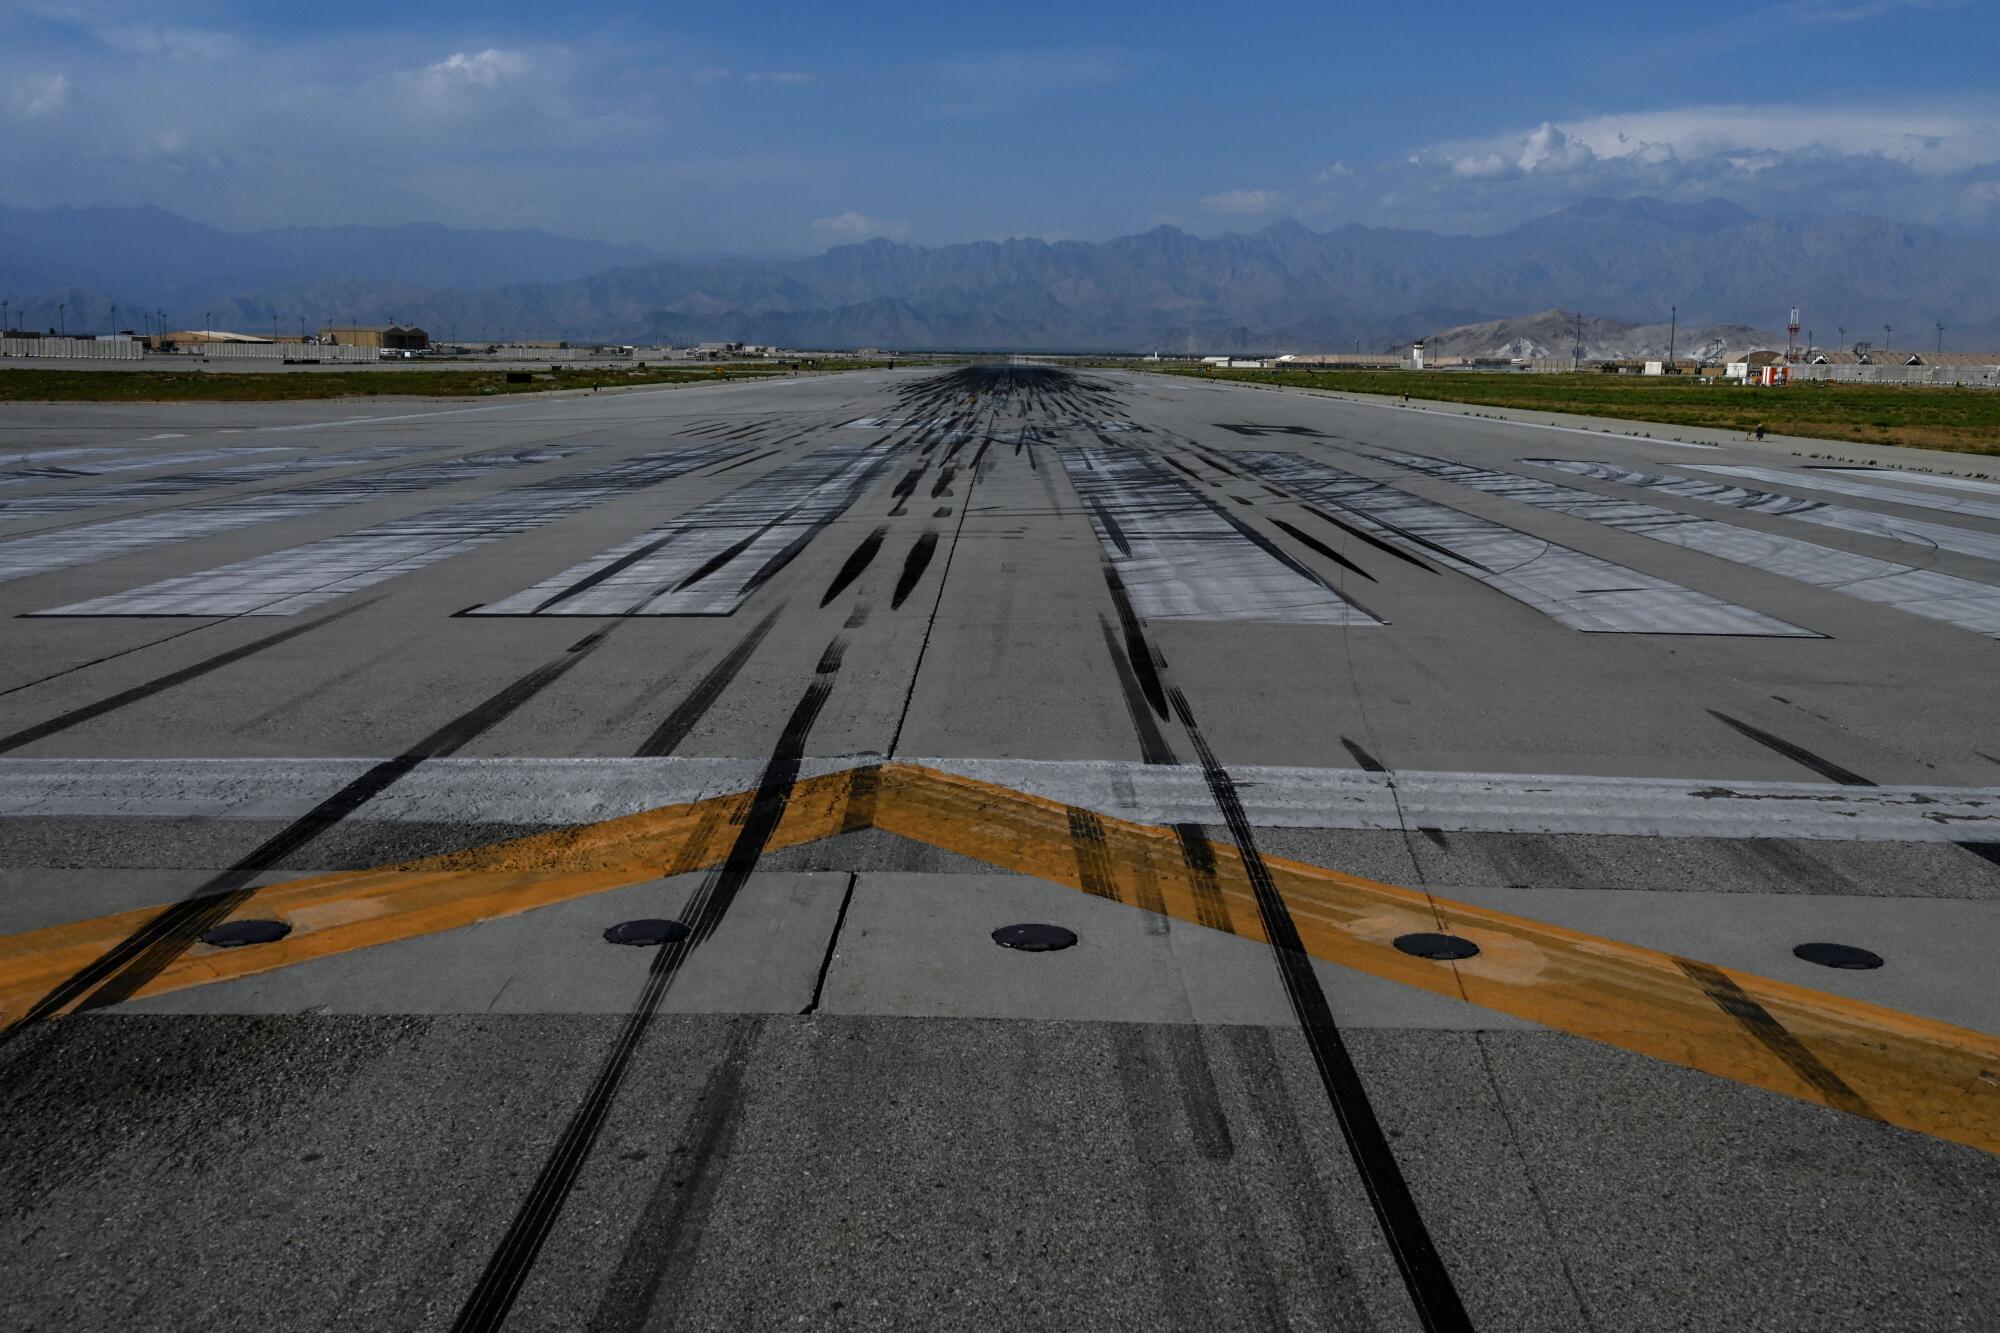 The runway at Bagram air base.